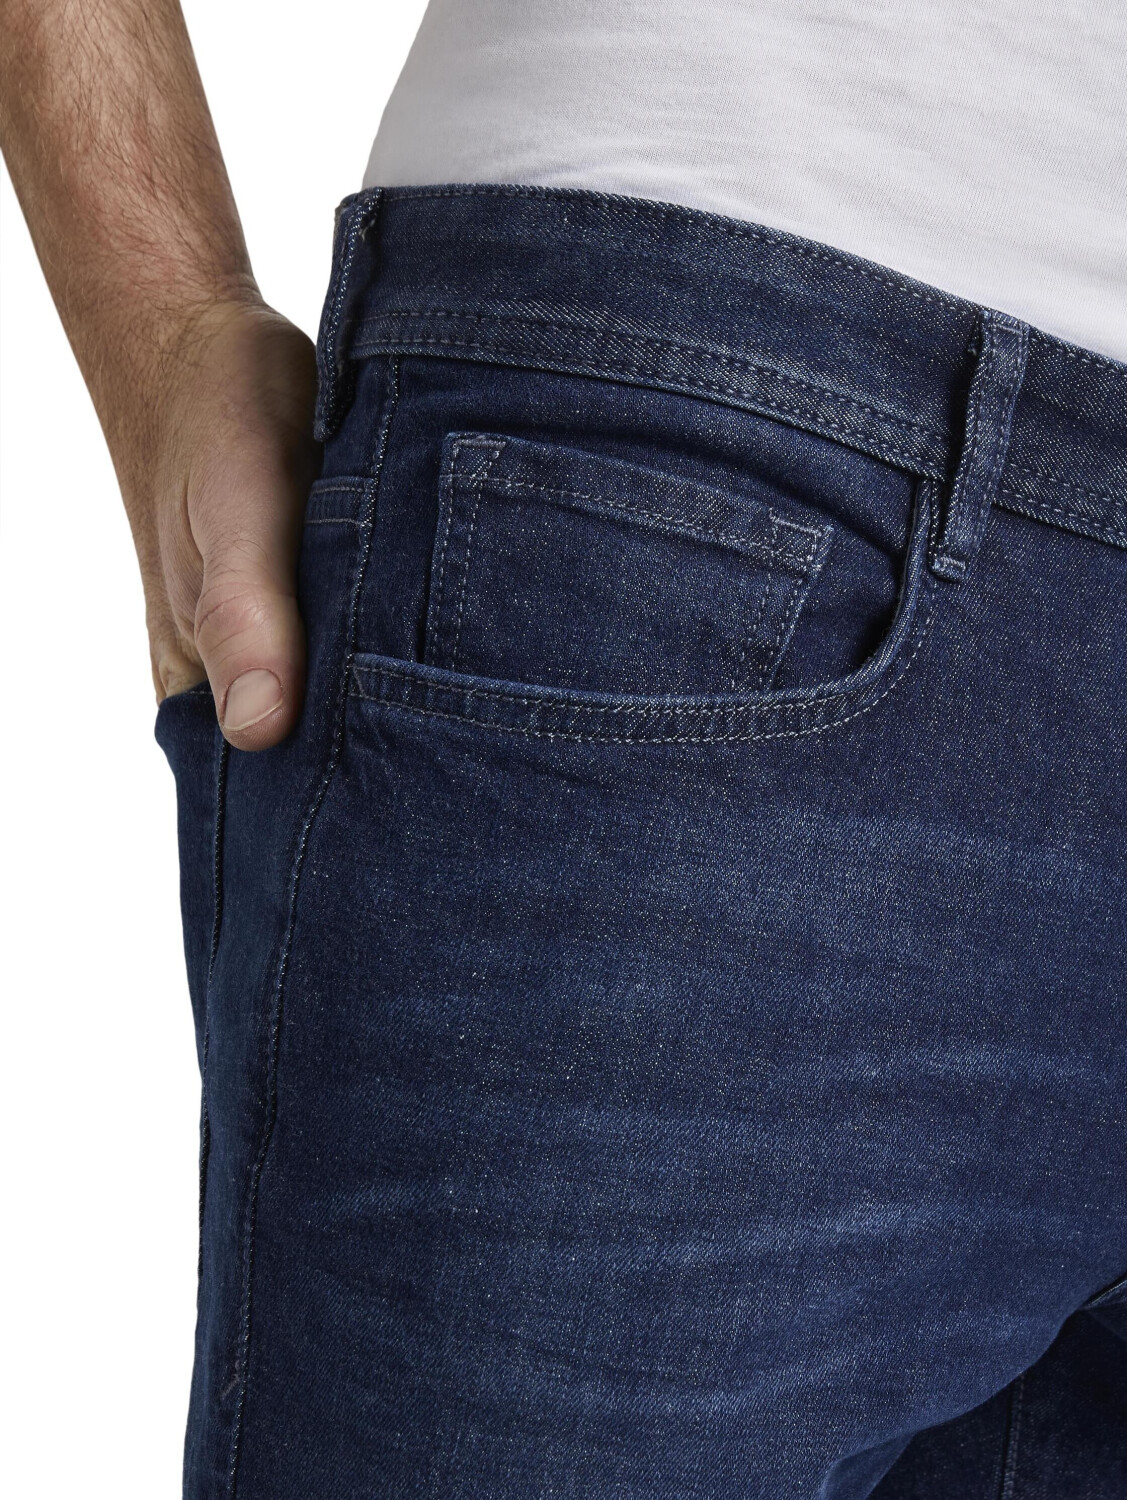 Tom Tailor Herren-jeans (1020102) dark stone wash denim ab 32,90 € |  Preisvergleich bei | Stretchjeans